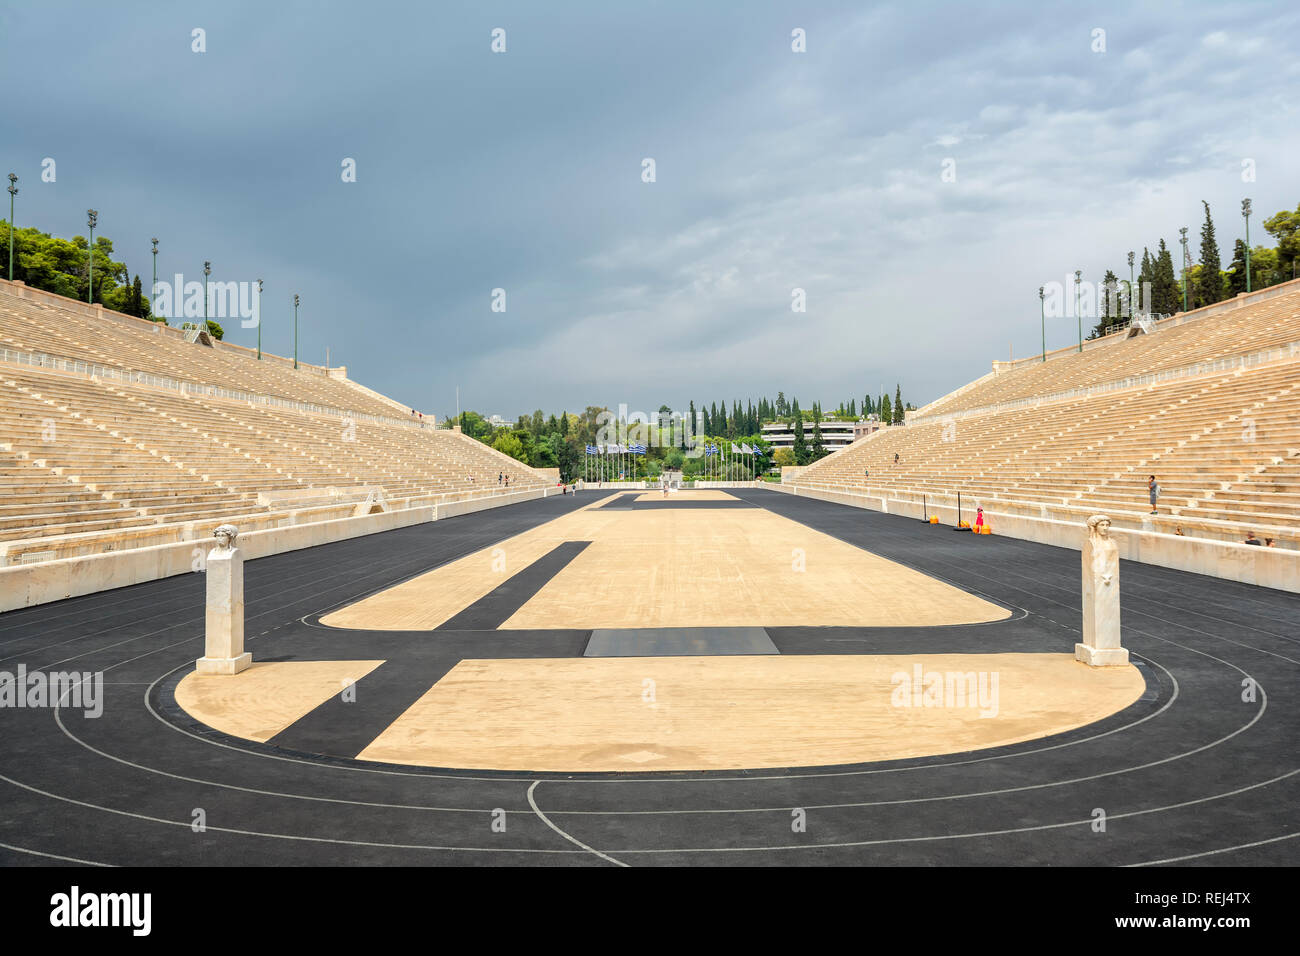 À partir de détails Stade Panathénaïque, un stade historique à Athènes, Grèce. C'est le seul stade au monde construit entièrement en marbre. Banque D'Images